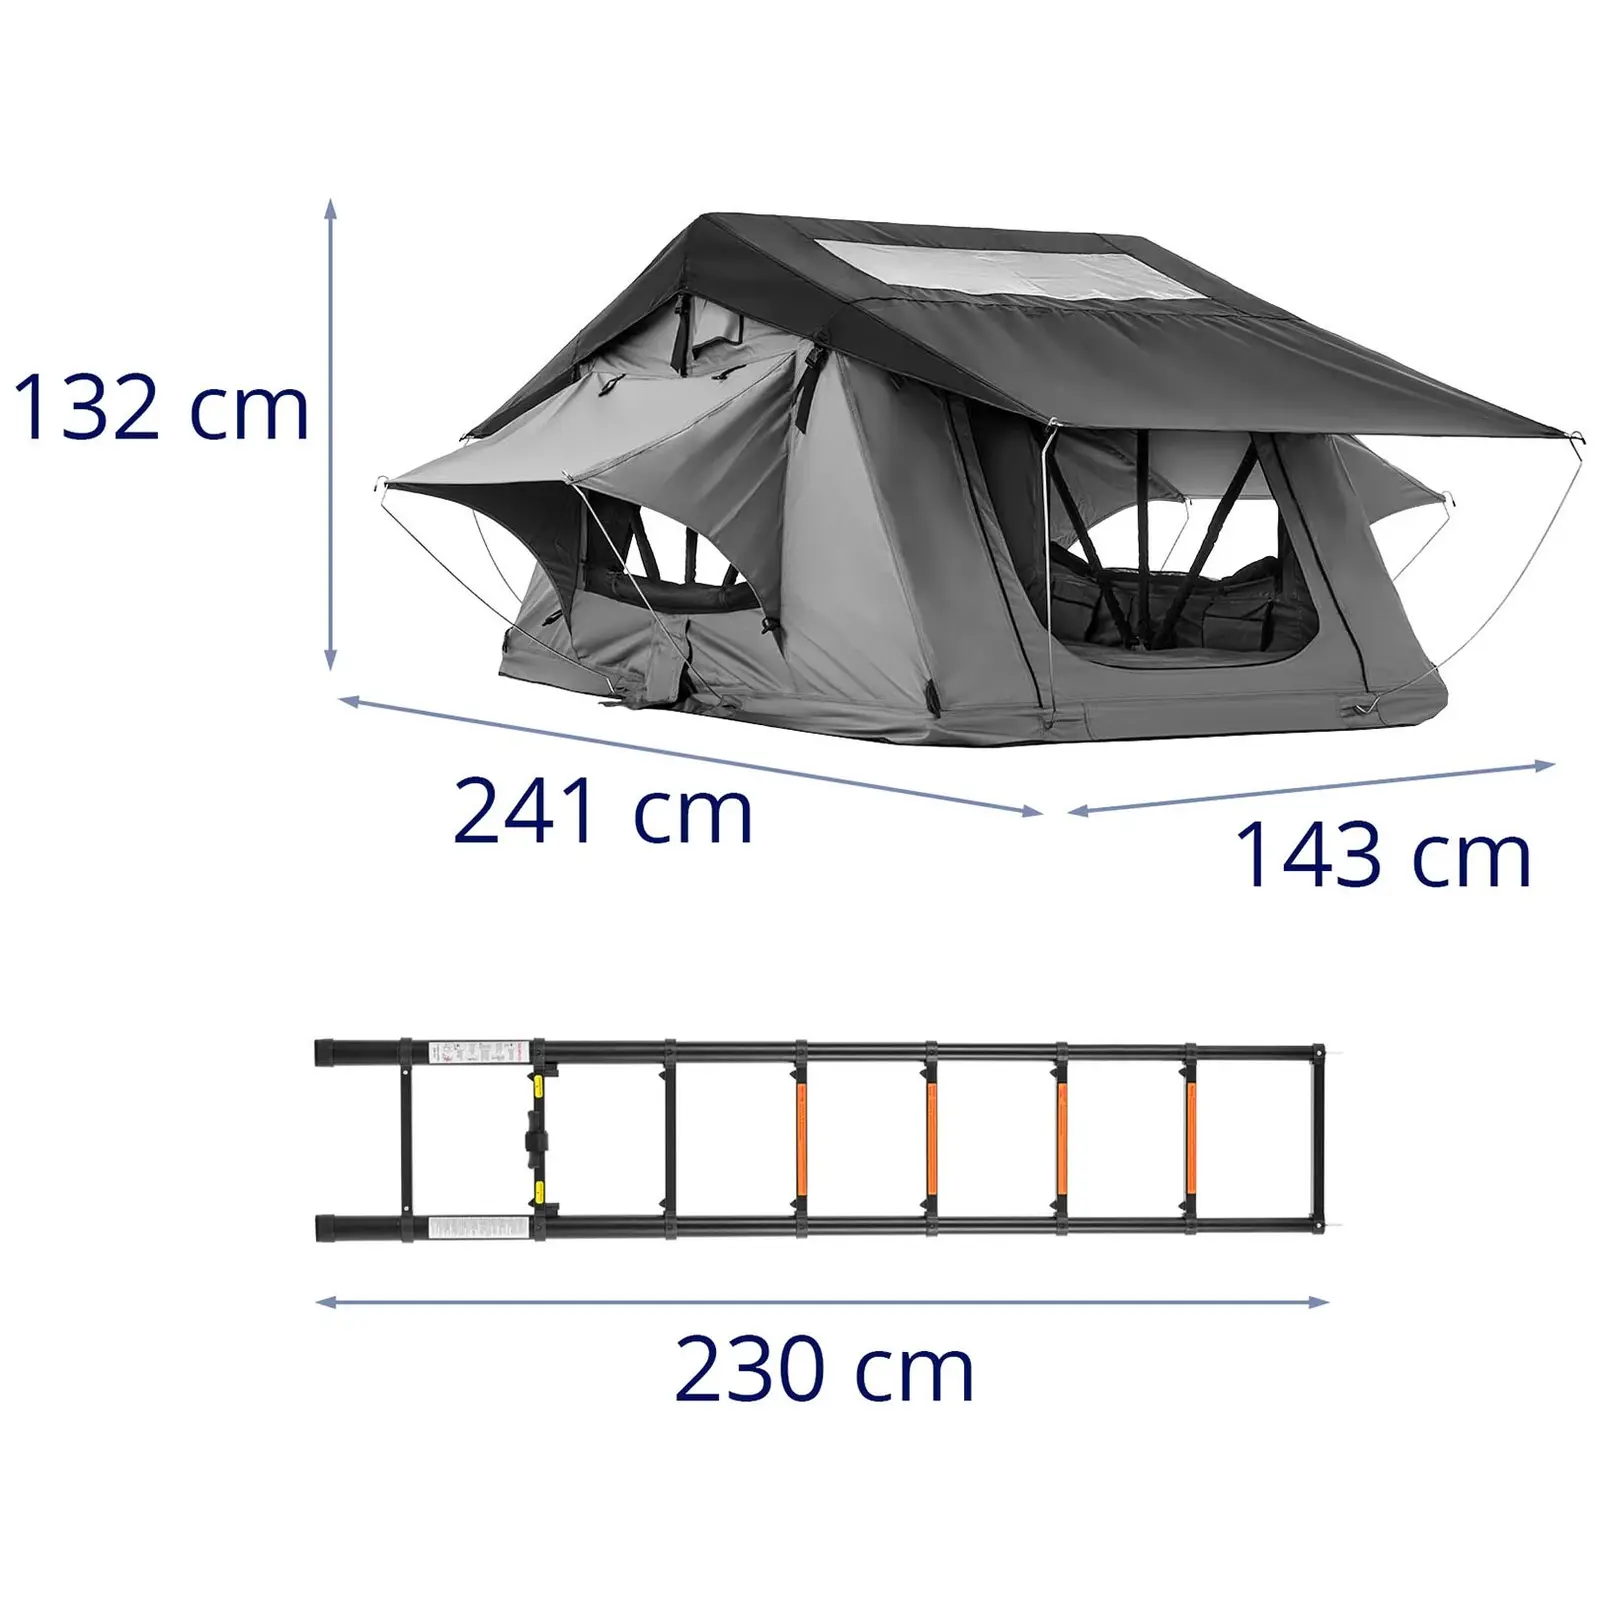 Tienda de techo - 240 x 140 x 130 cm